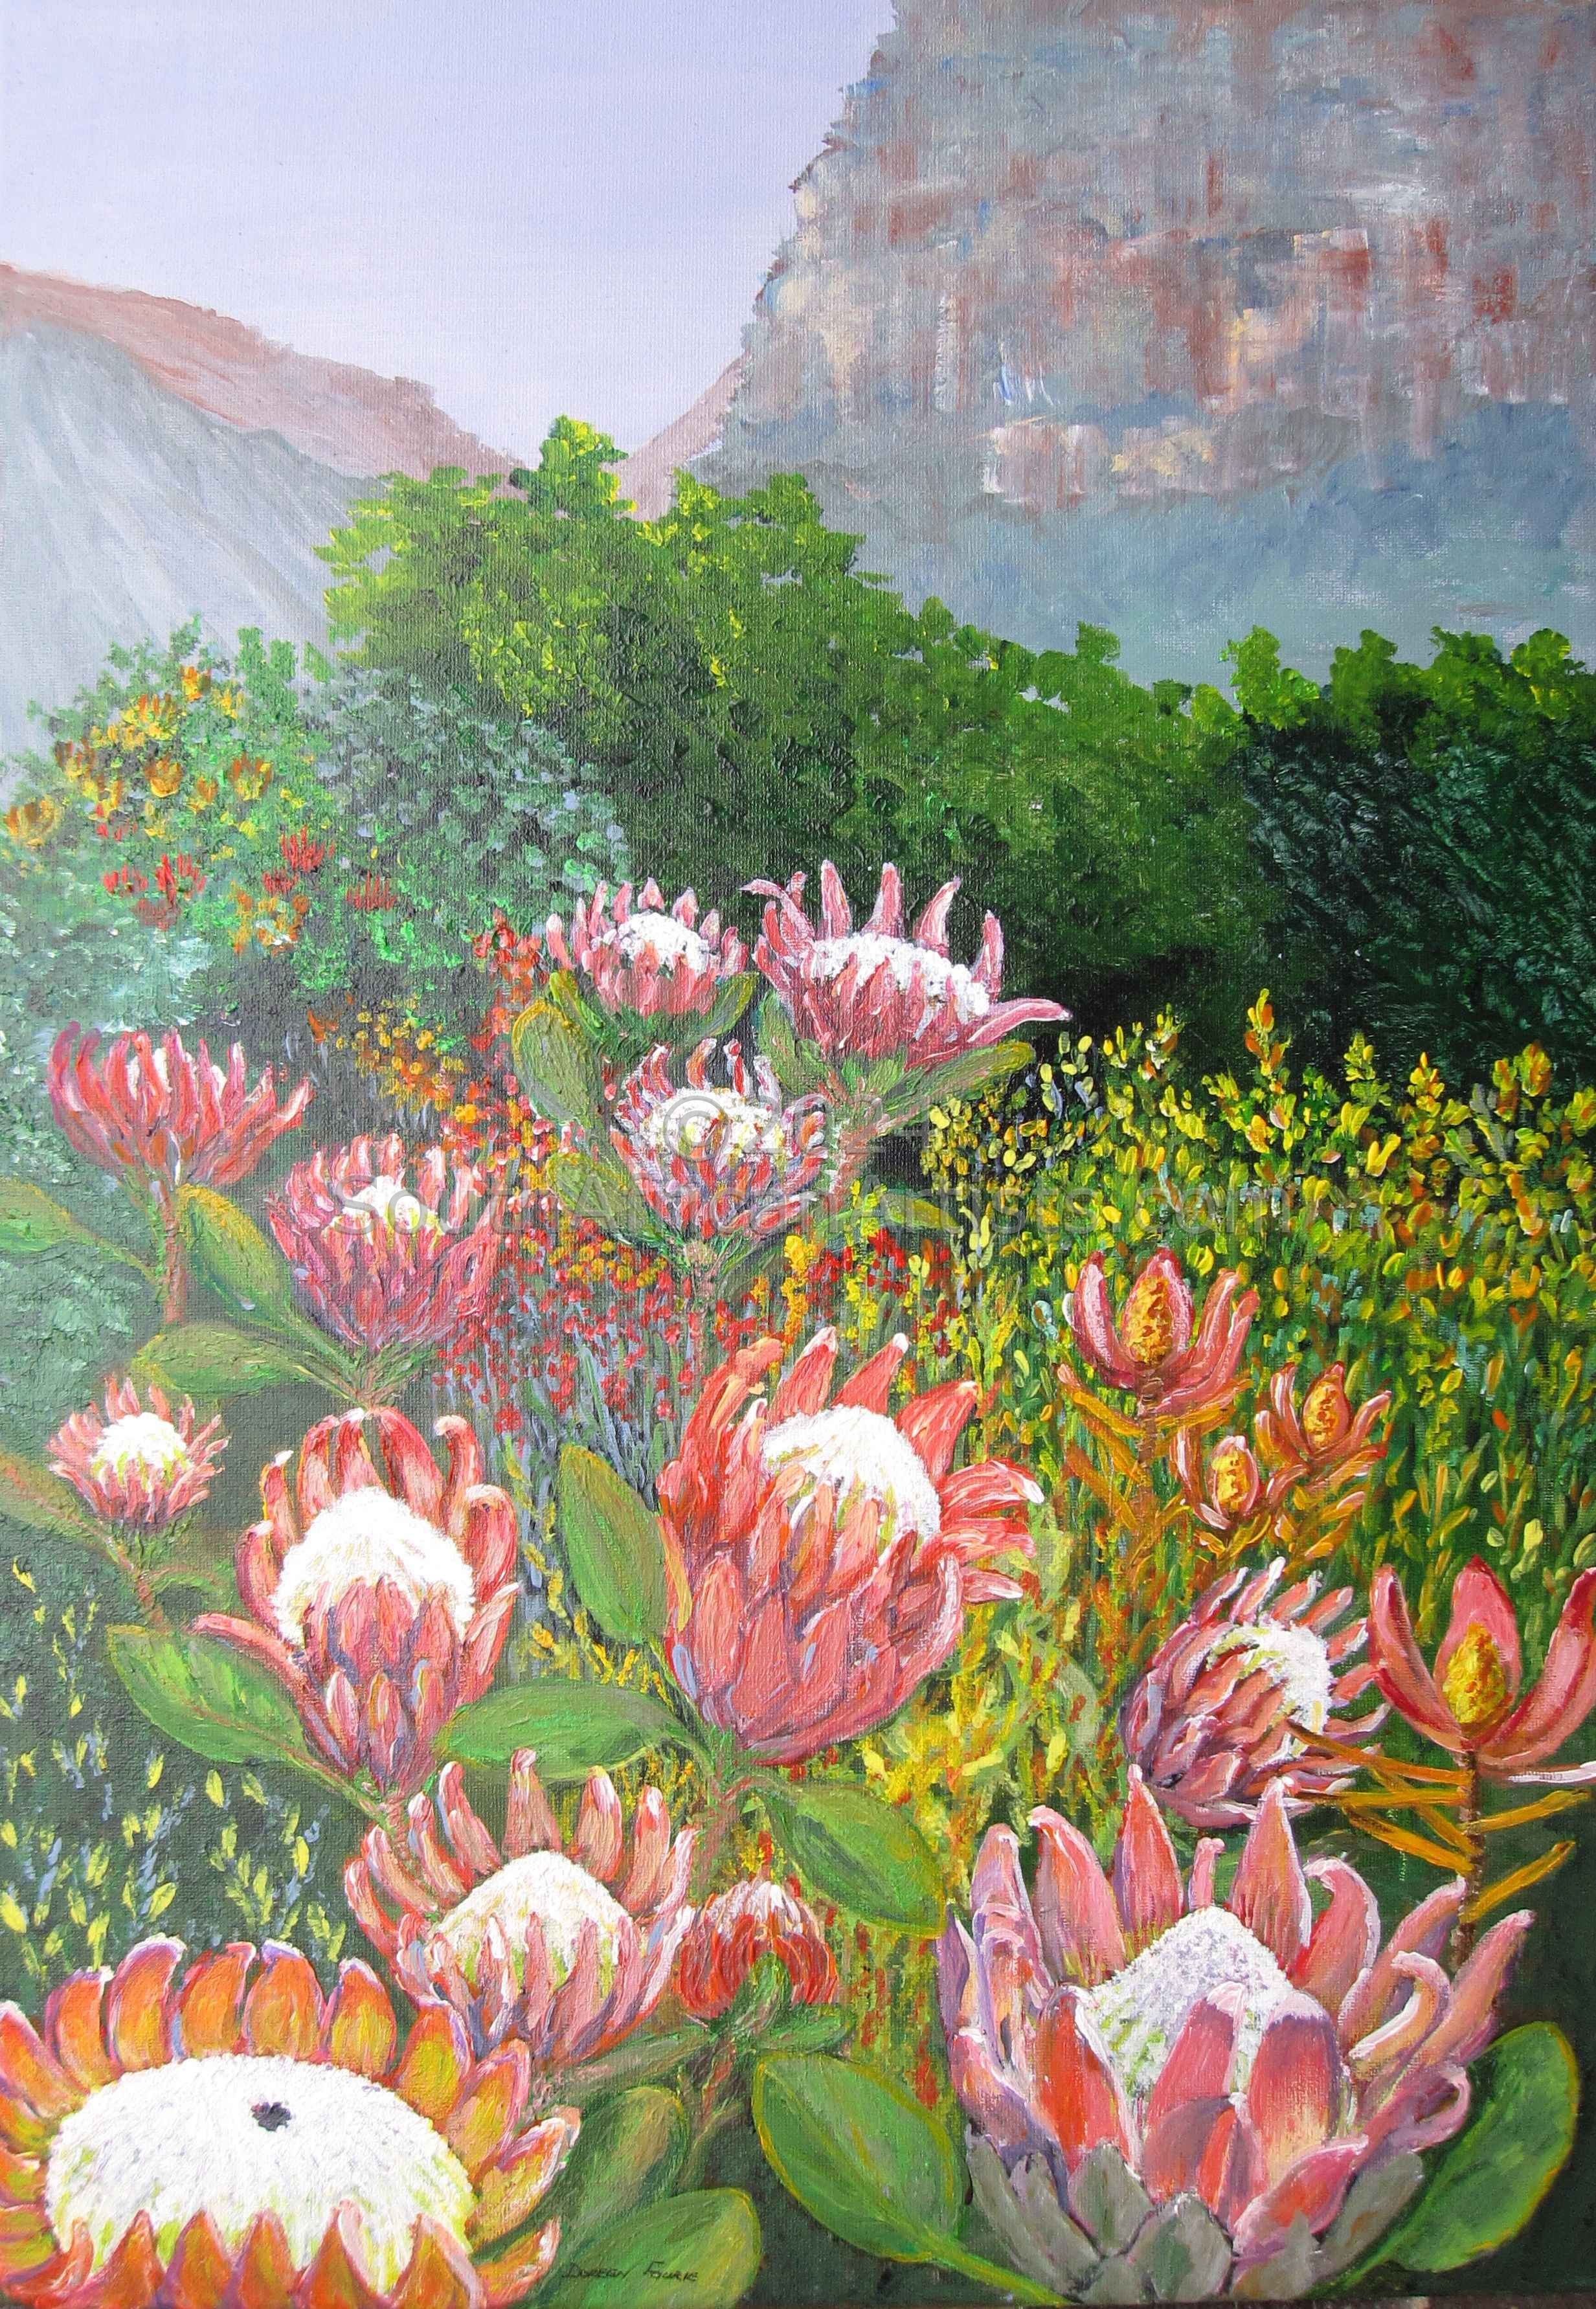 Gaint Proteas in a Field of Fynbos